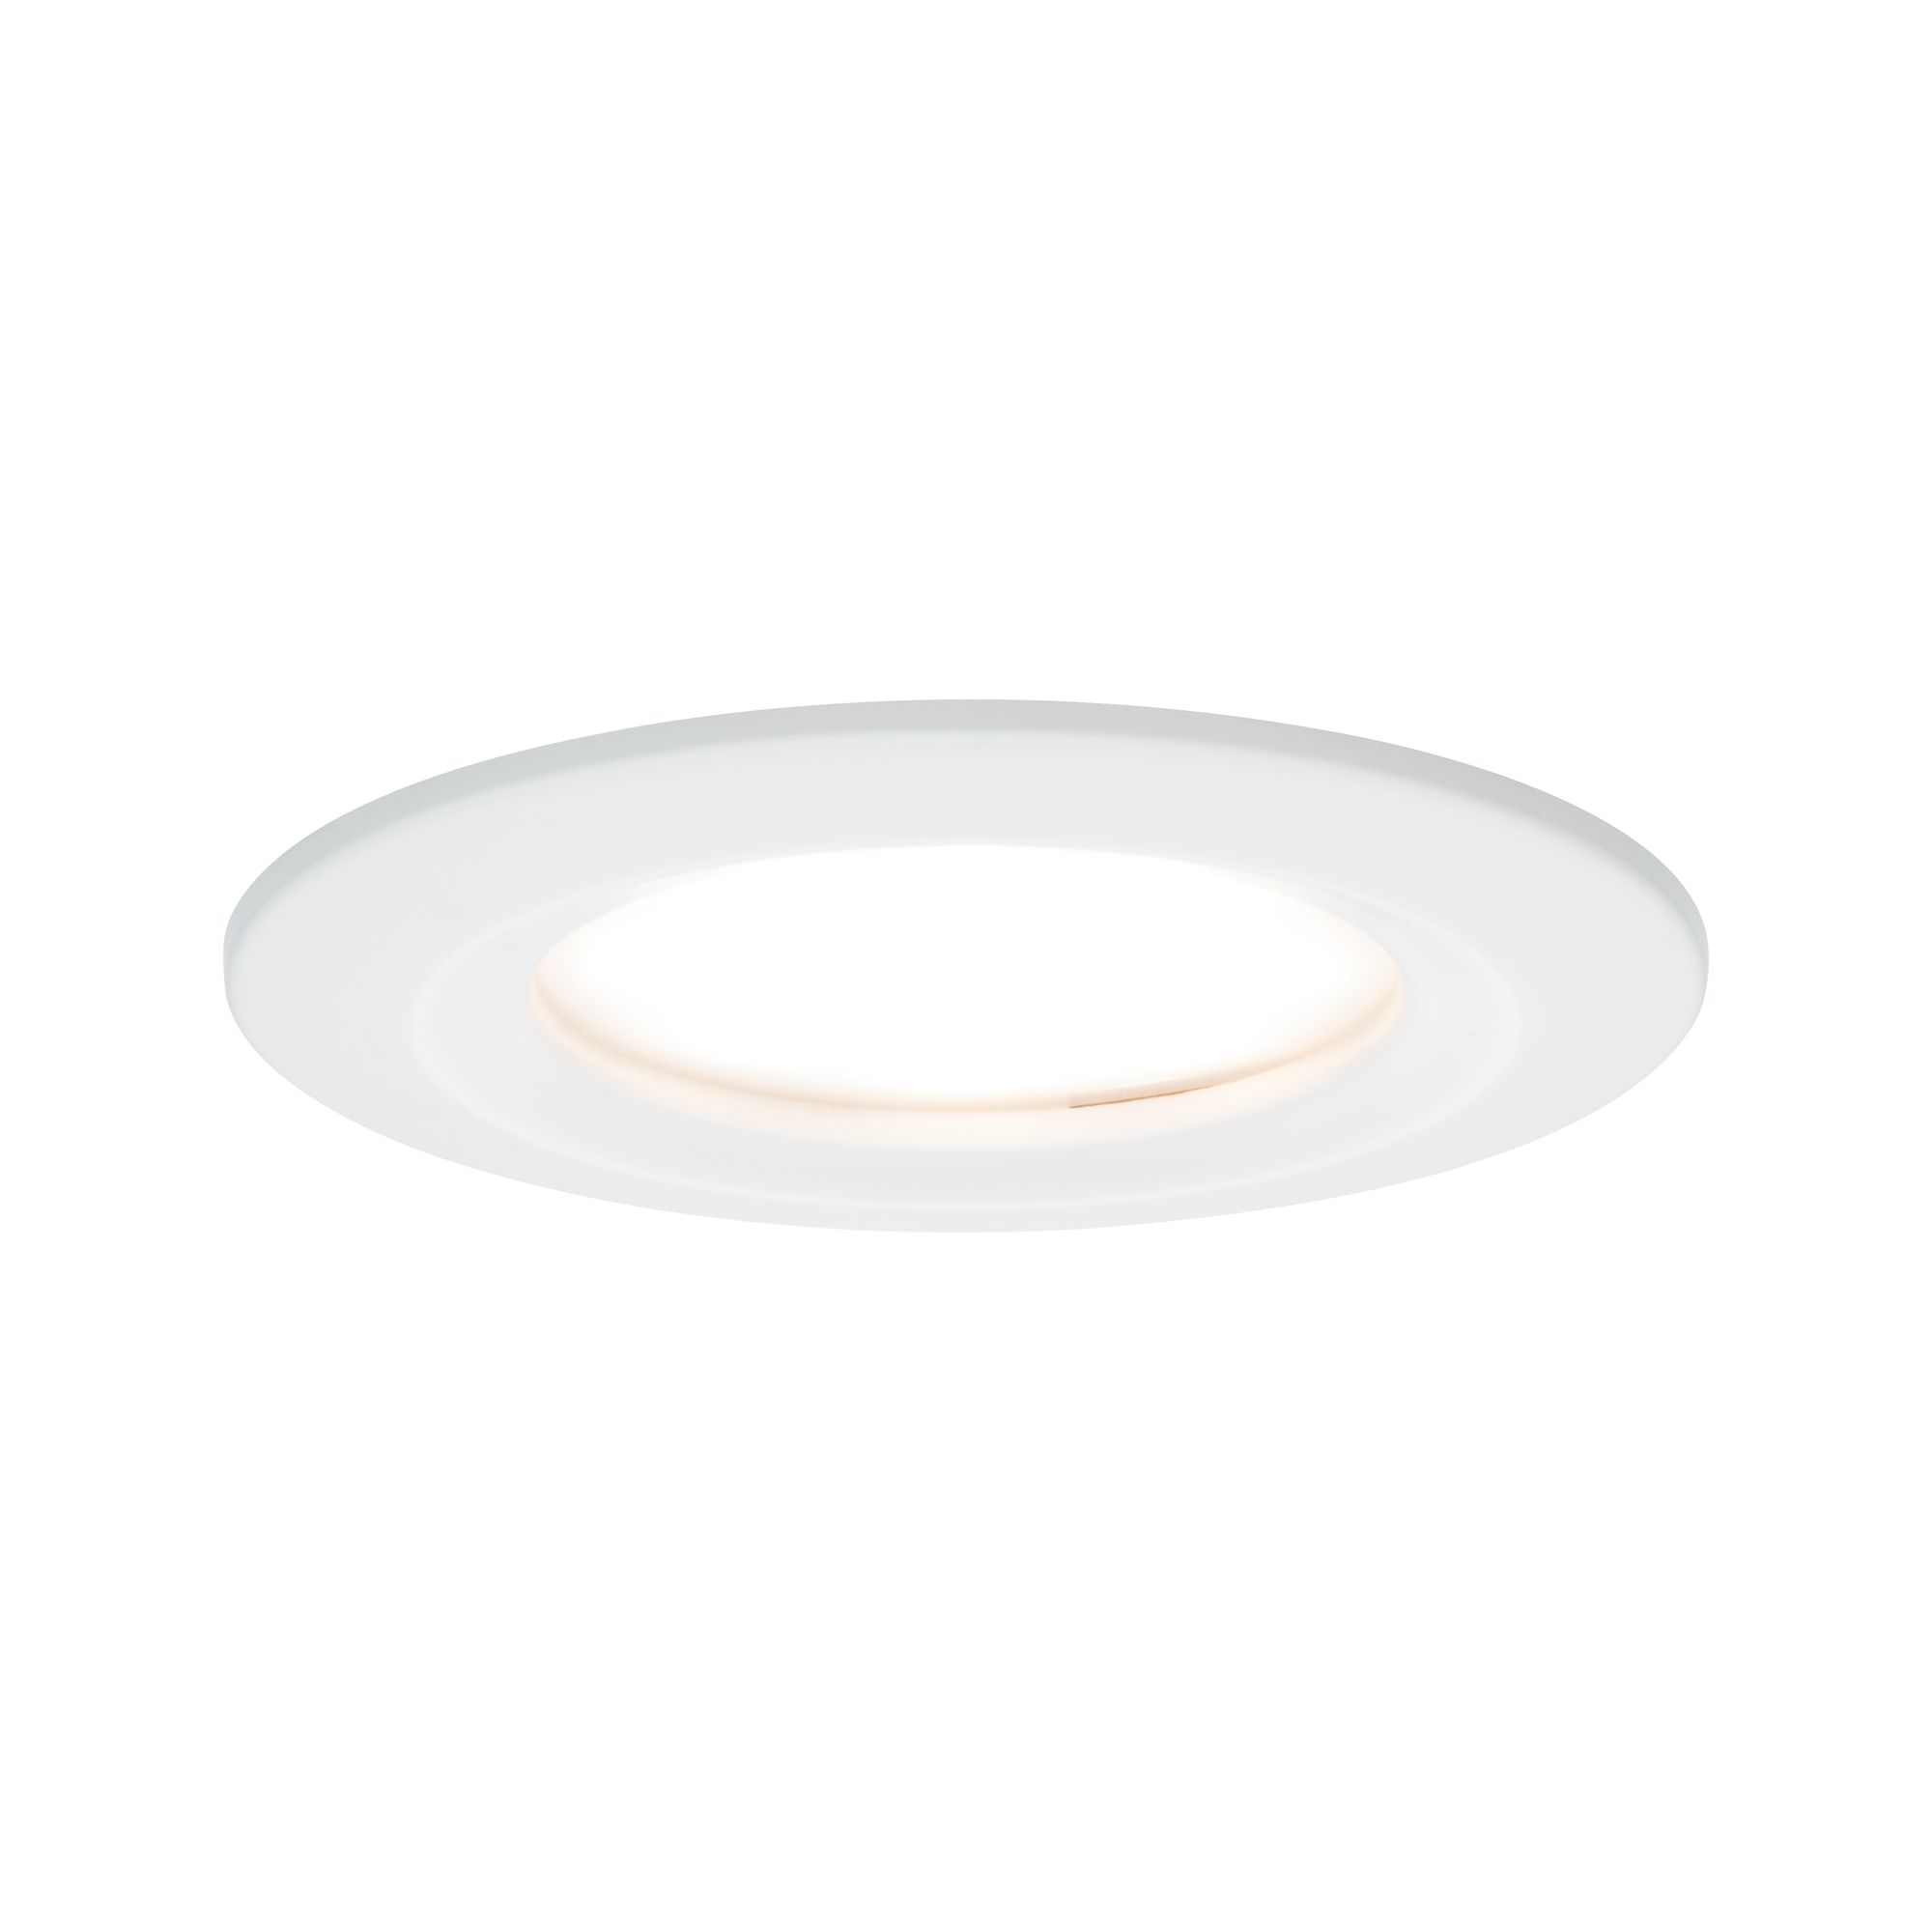 PAULMANN - Vestavné svítidlo LED Nova kruhové 1x6,5W bílá mat nevýklopné 3-krokové-stmívatelné, P 93495